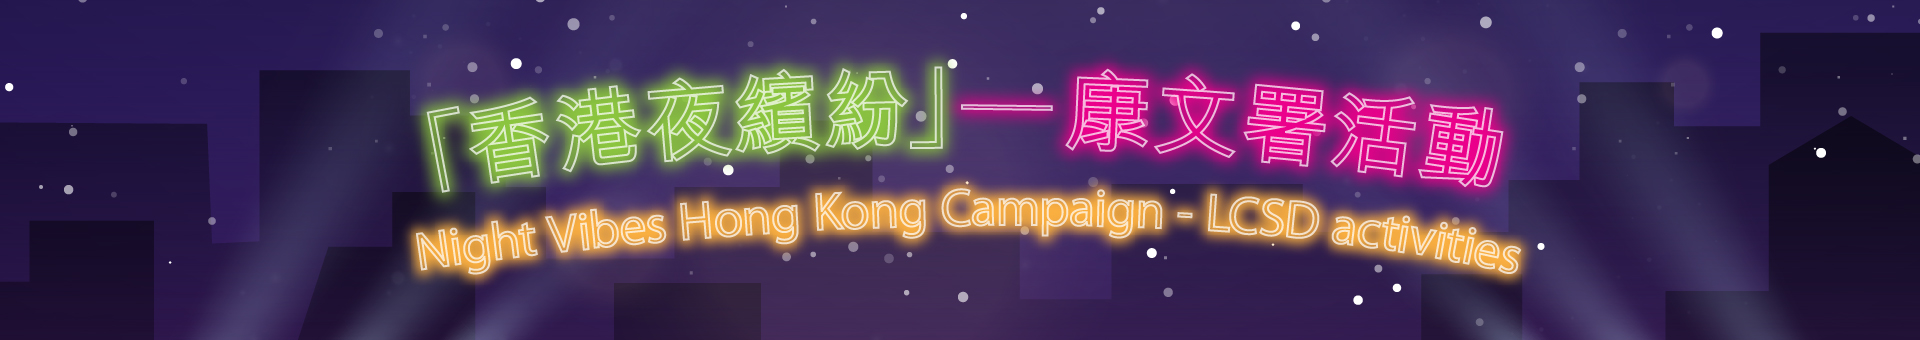 Night Vibes Hong Kong Campaign - LCSD activities